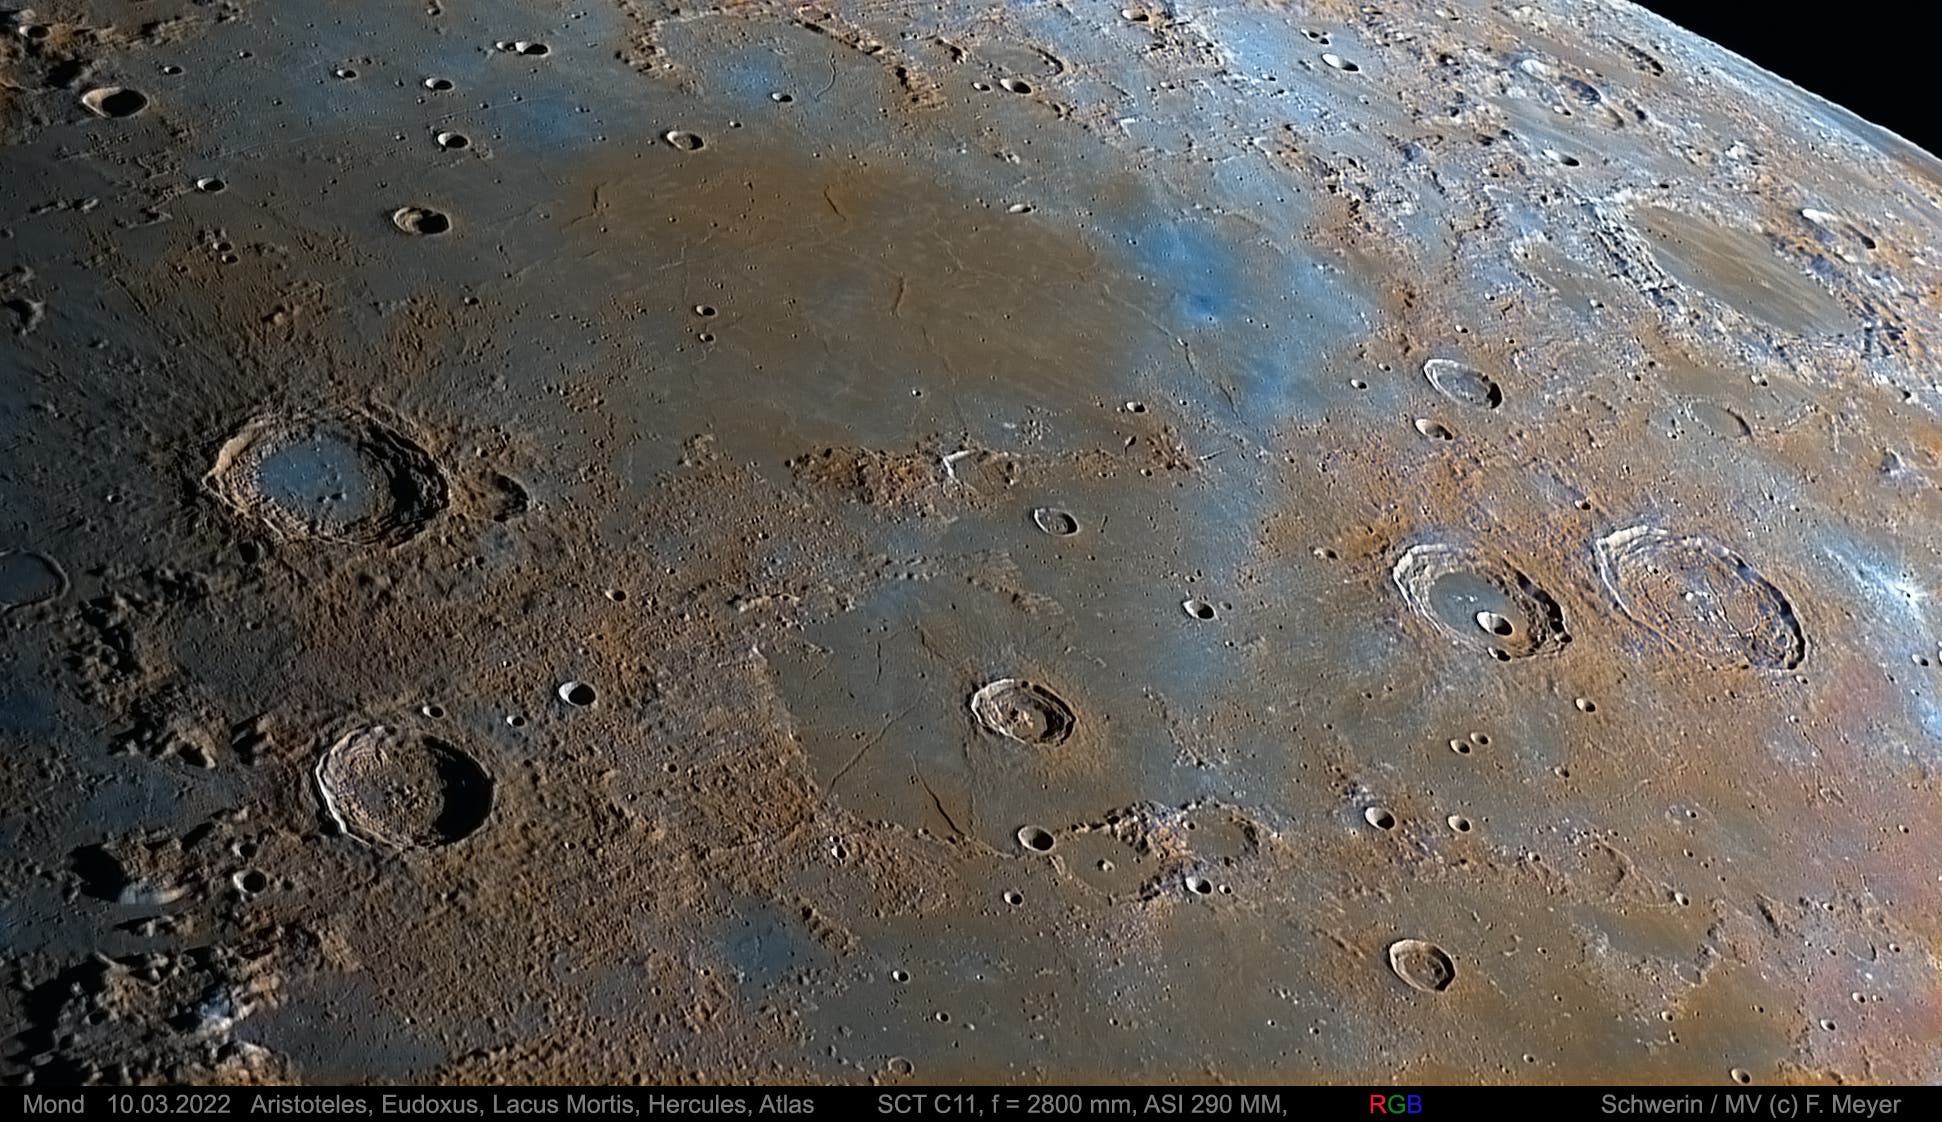 Mond, Aristoteles, Eudoxus, Hercules, Atlas am 10. März 2022